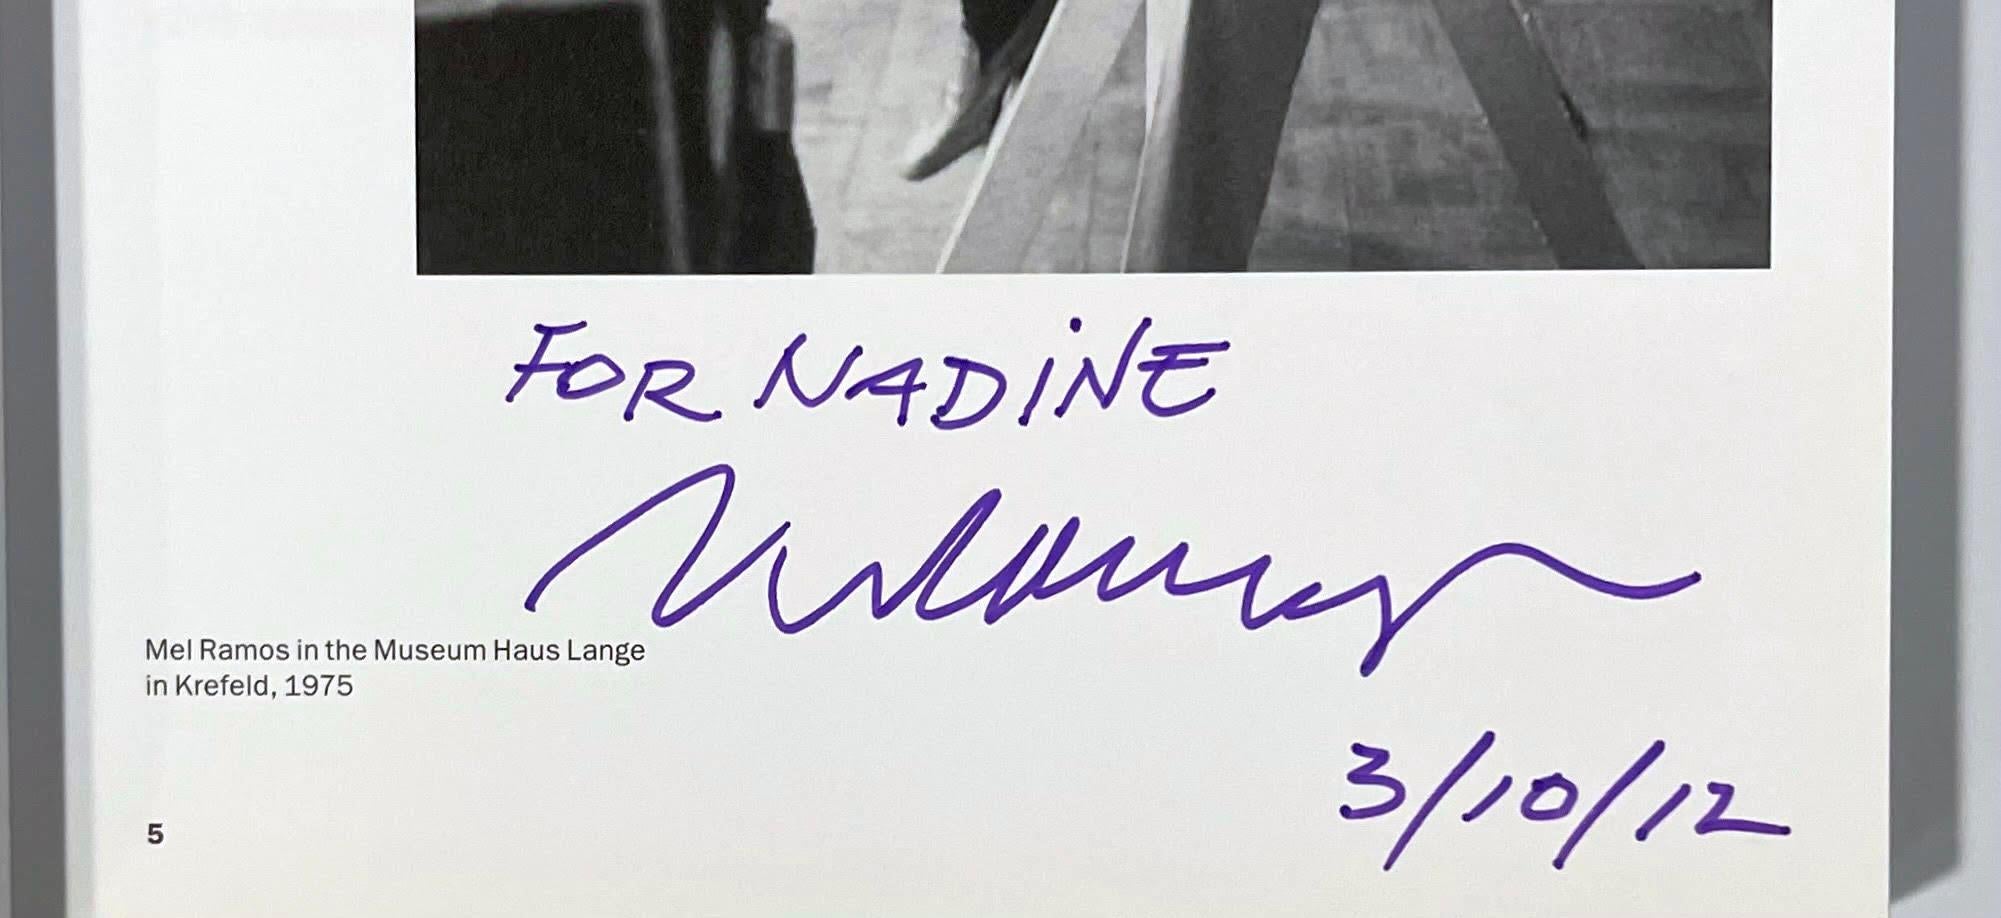 Mel Ramos 50 Years of Pop Art (signé, daté et inscrit à Nadine par Mel Ramos), 2010
Monographie brochée avec jaquette (signée, datée et inscrite par Mel Ramos)
Signé à la main, daté 3/10/12 et dédicacé à Nadine par Mel Ramos en page 5.
8 1/4 × 6 1/2